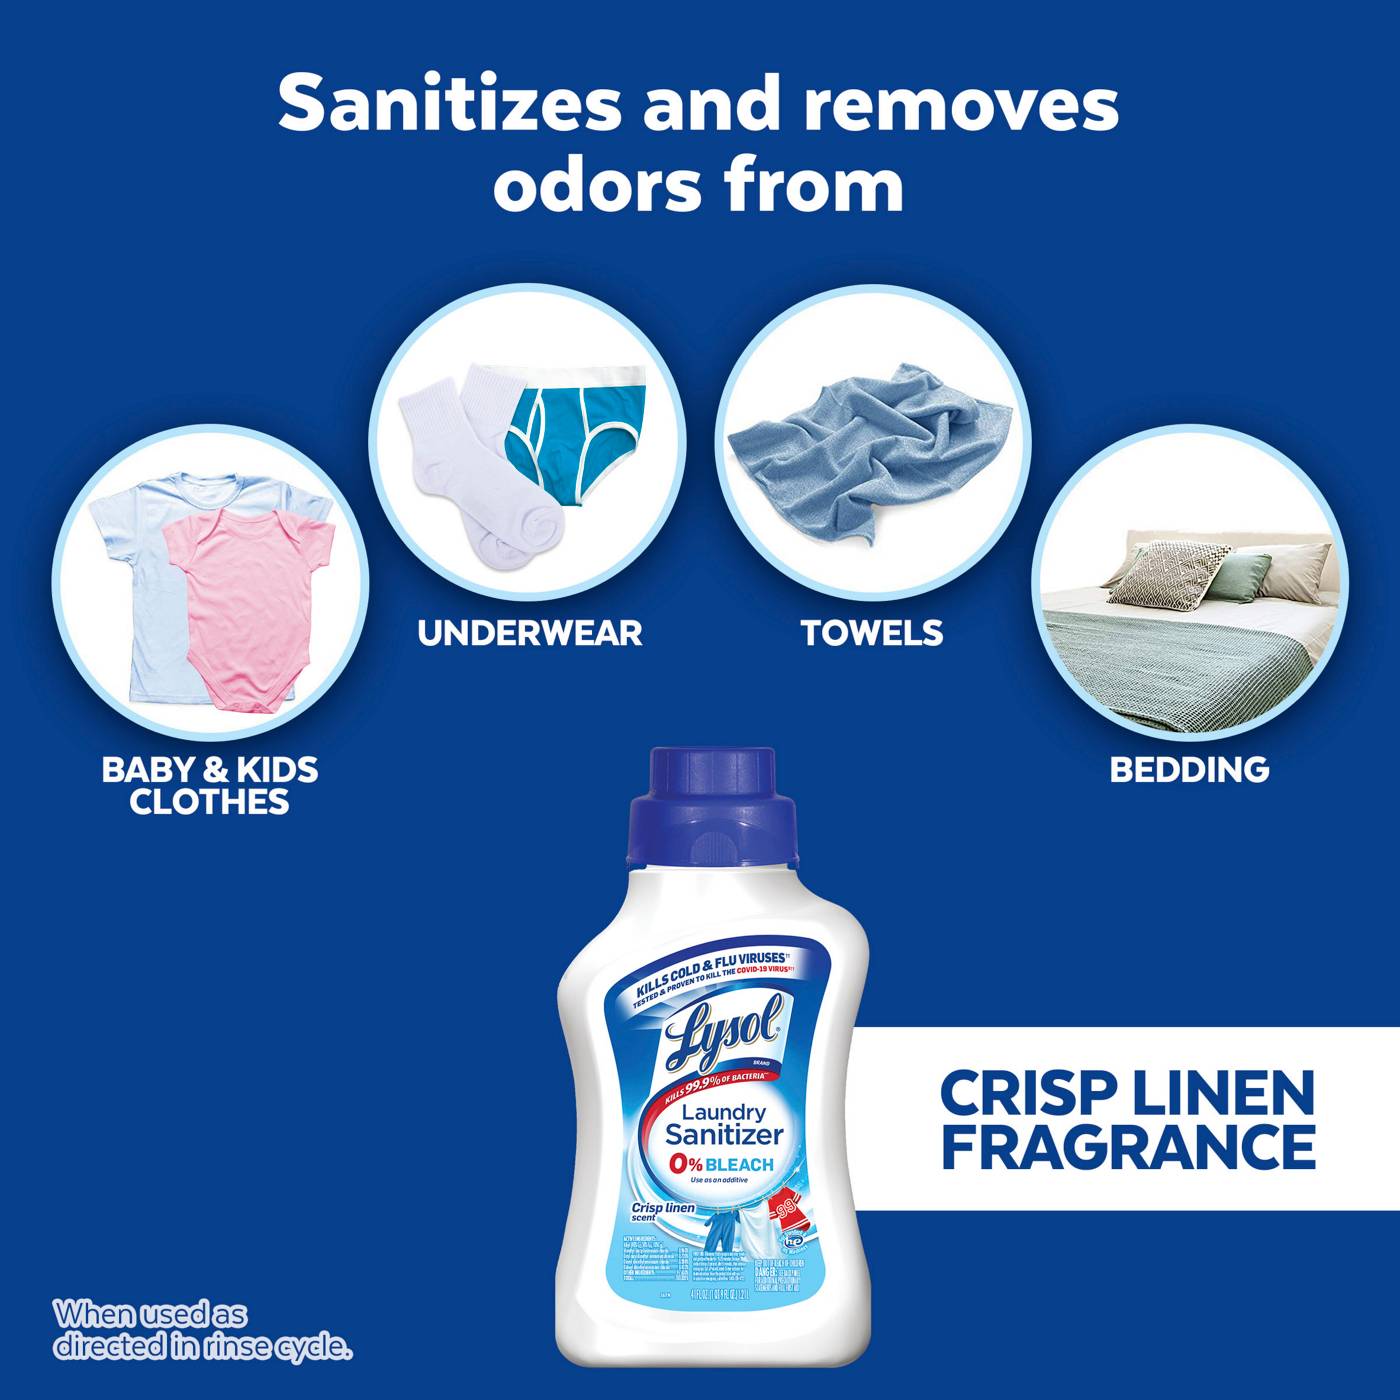 Lysol Crisp Linen Laundry Sanitizer; image 6 of 6